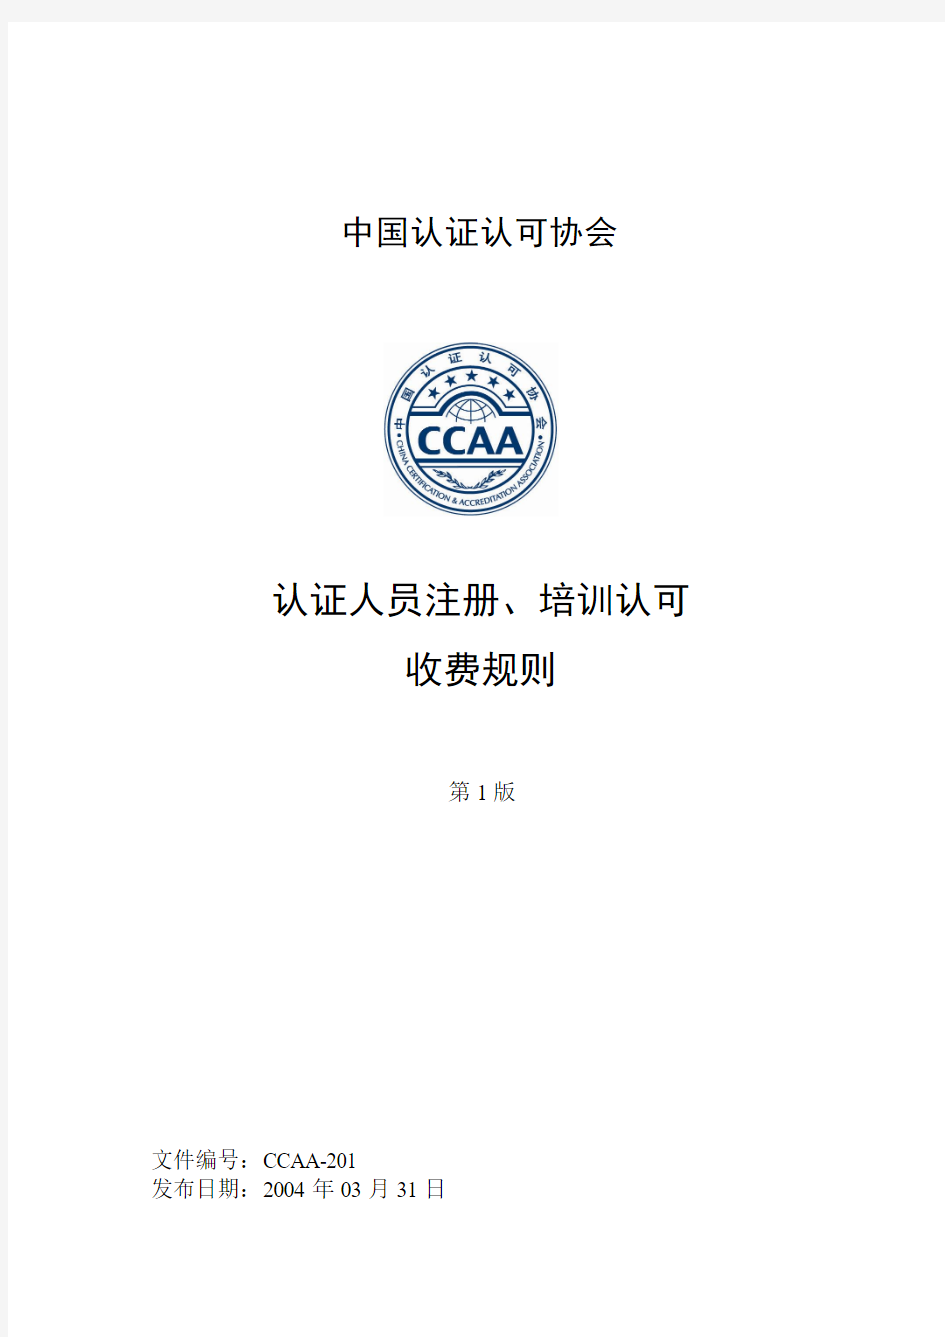 中国认证认可协会认证人员注册、培训认可